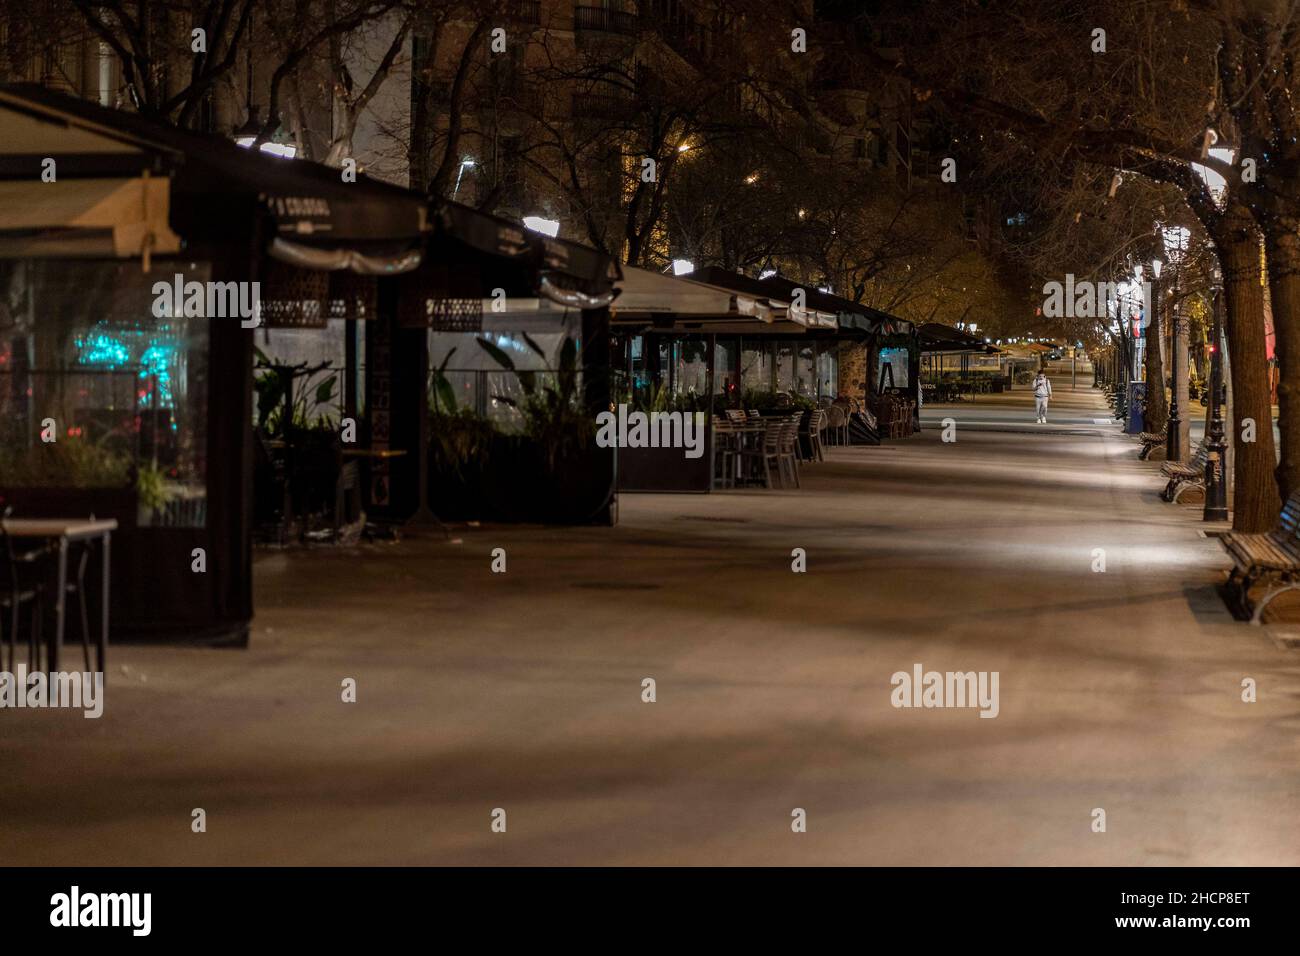 Barcelona, Spanien. 29th Dez 2021. Ein Bürger geht während der Ausgangssperre in Barcelona, Spanien, am 29. Dezember 2021 auf einer Straße. Quelle: Joan Gosa/Xinhua/Alamy Live News Stockfoto